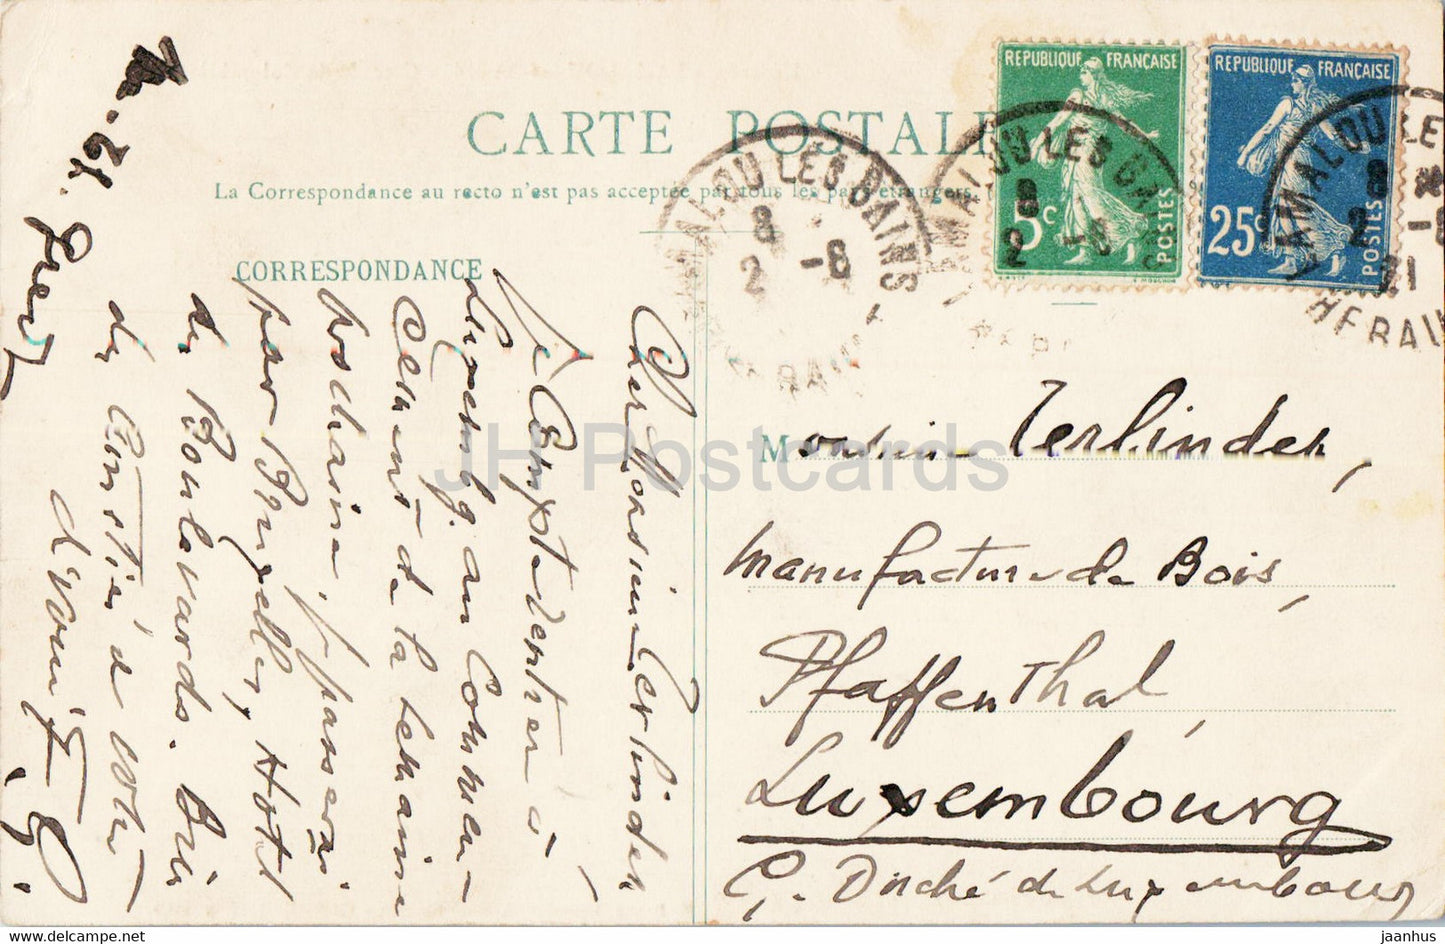 Lamalou les Bains - Cascade de Colombières - alte Postkarte - 1921 - Frankreich - gebraucht